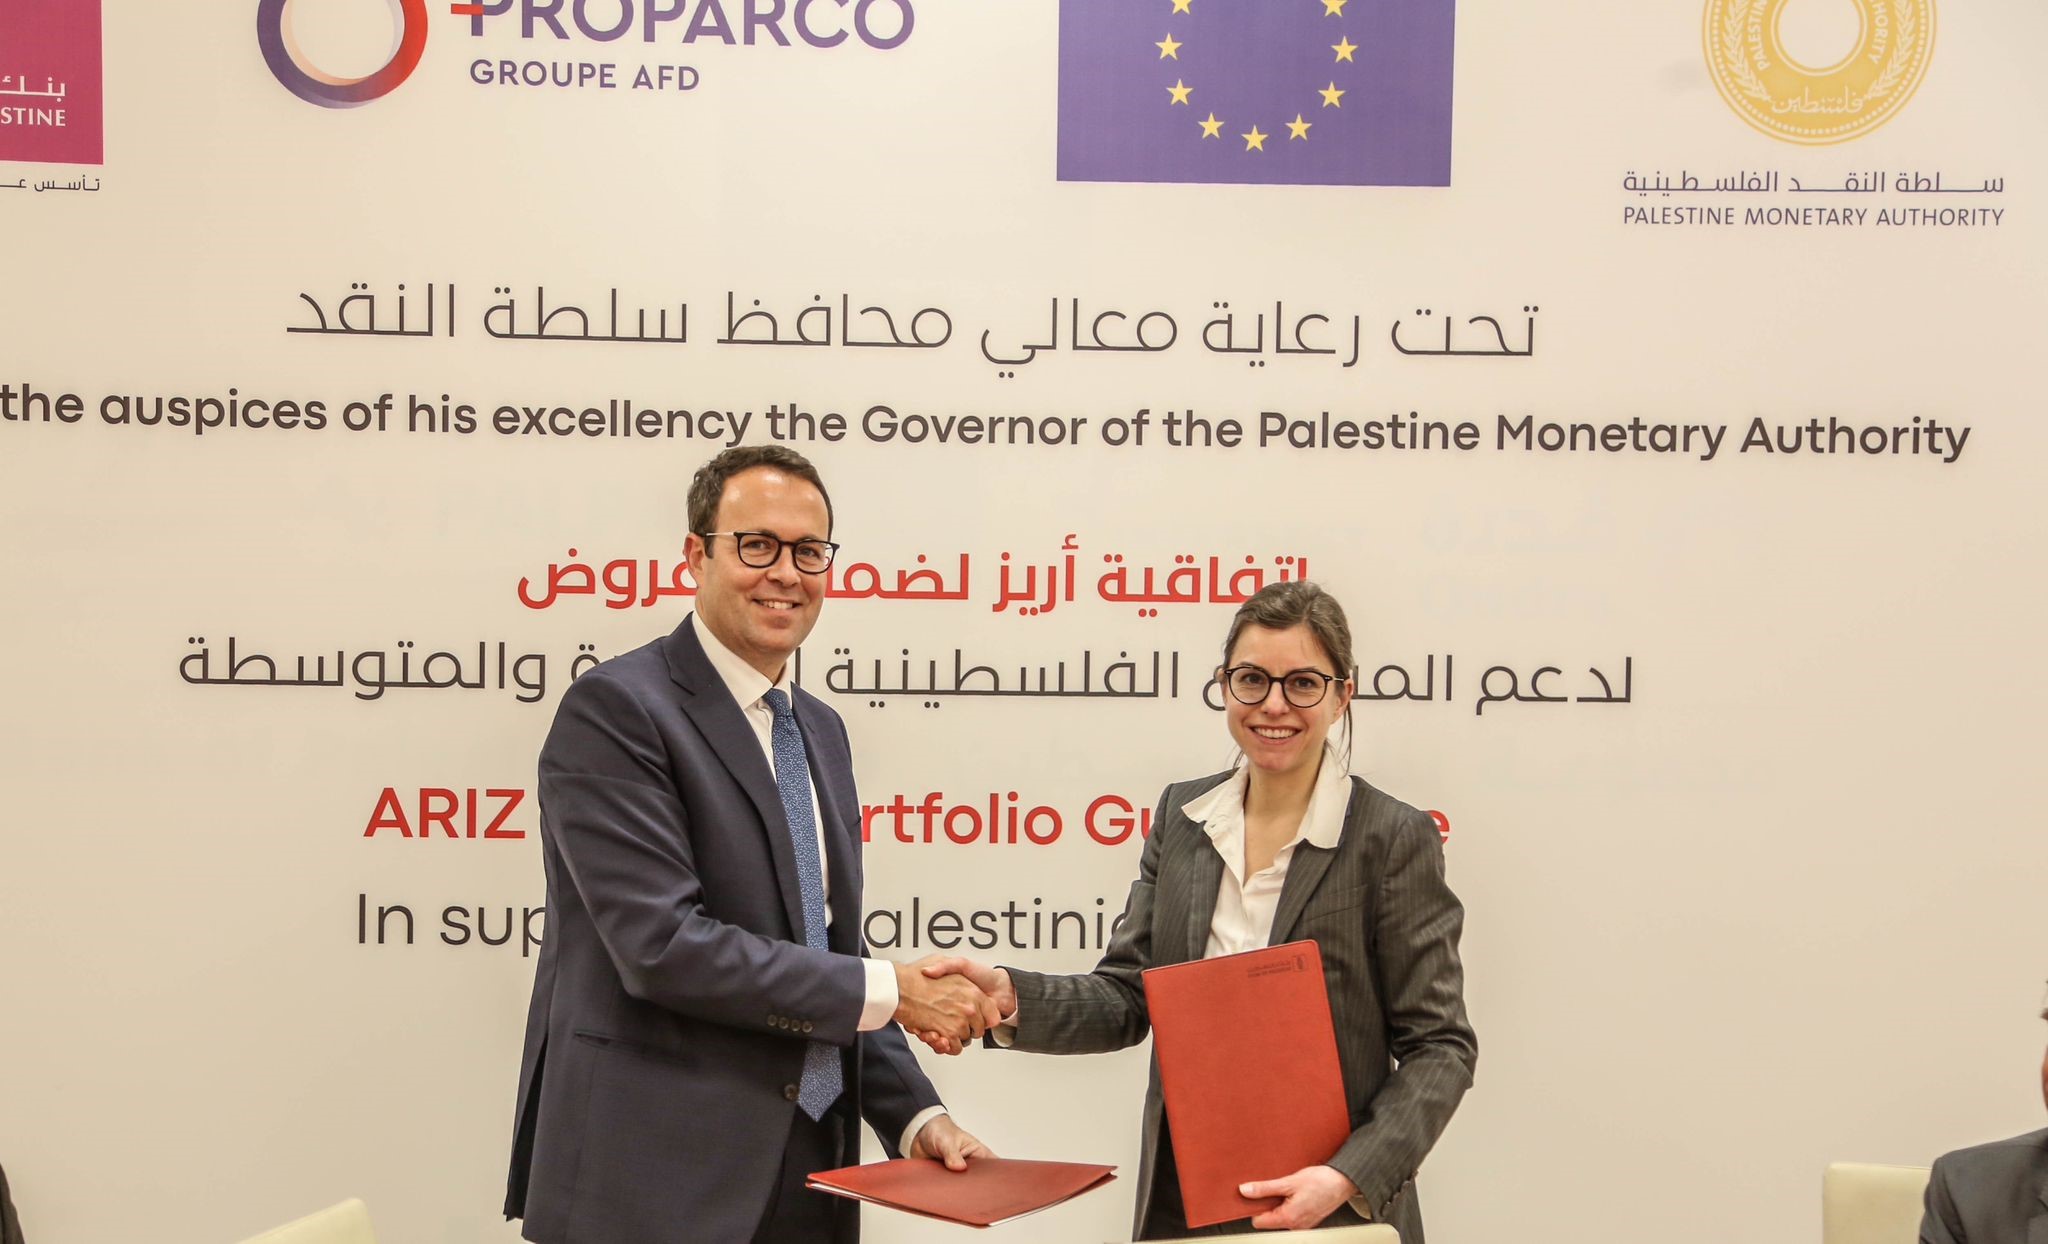 بروباركو والاتحاد الأوروبي يجددان اتفاقيتهما مع بنك فلسطين لتمويل المشاريع الصغيرة والمتوسطة